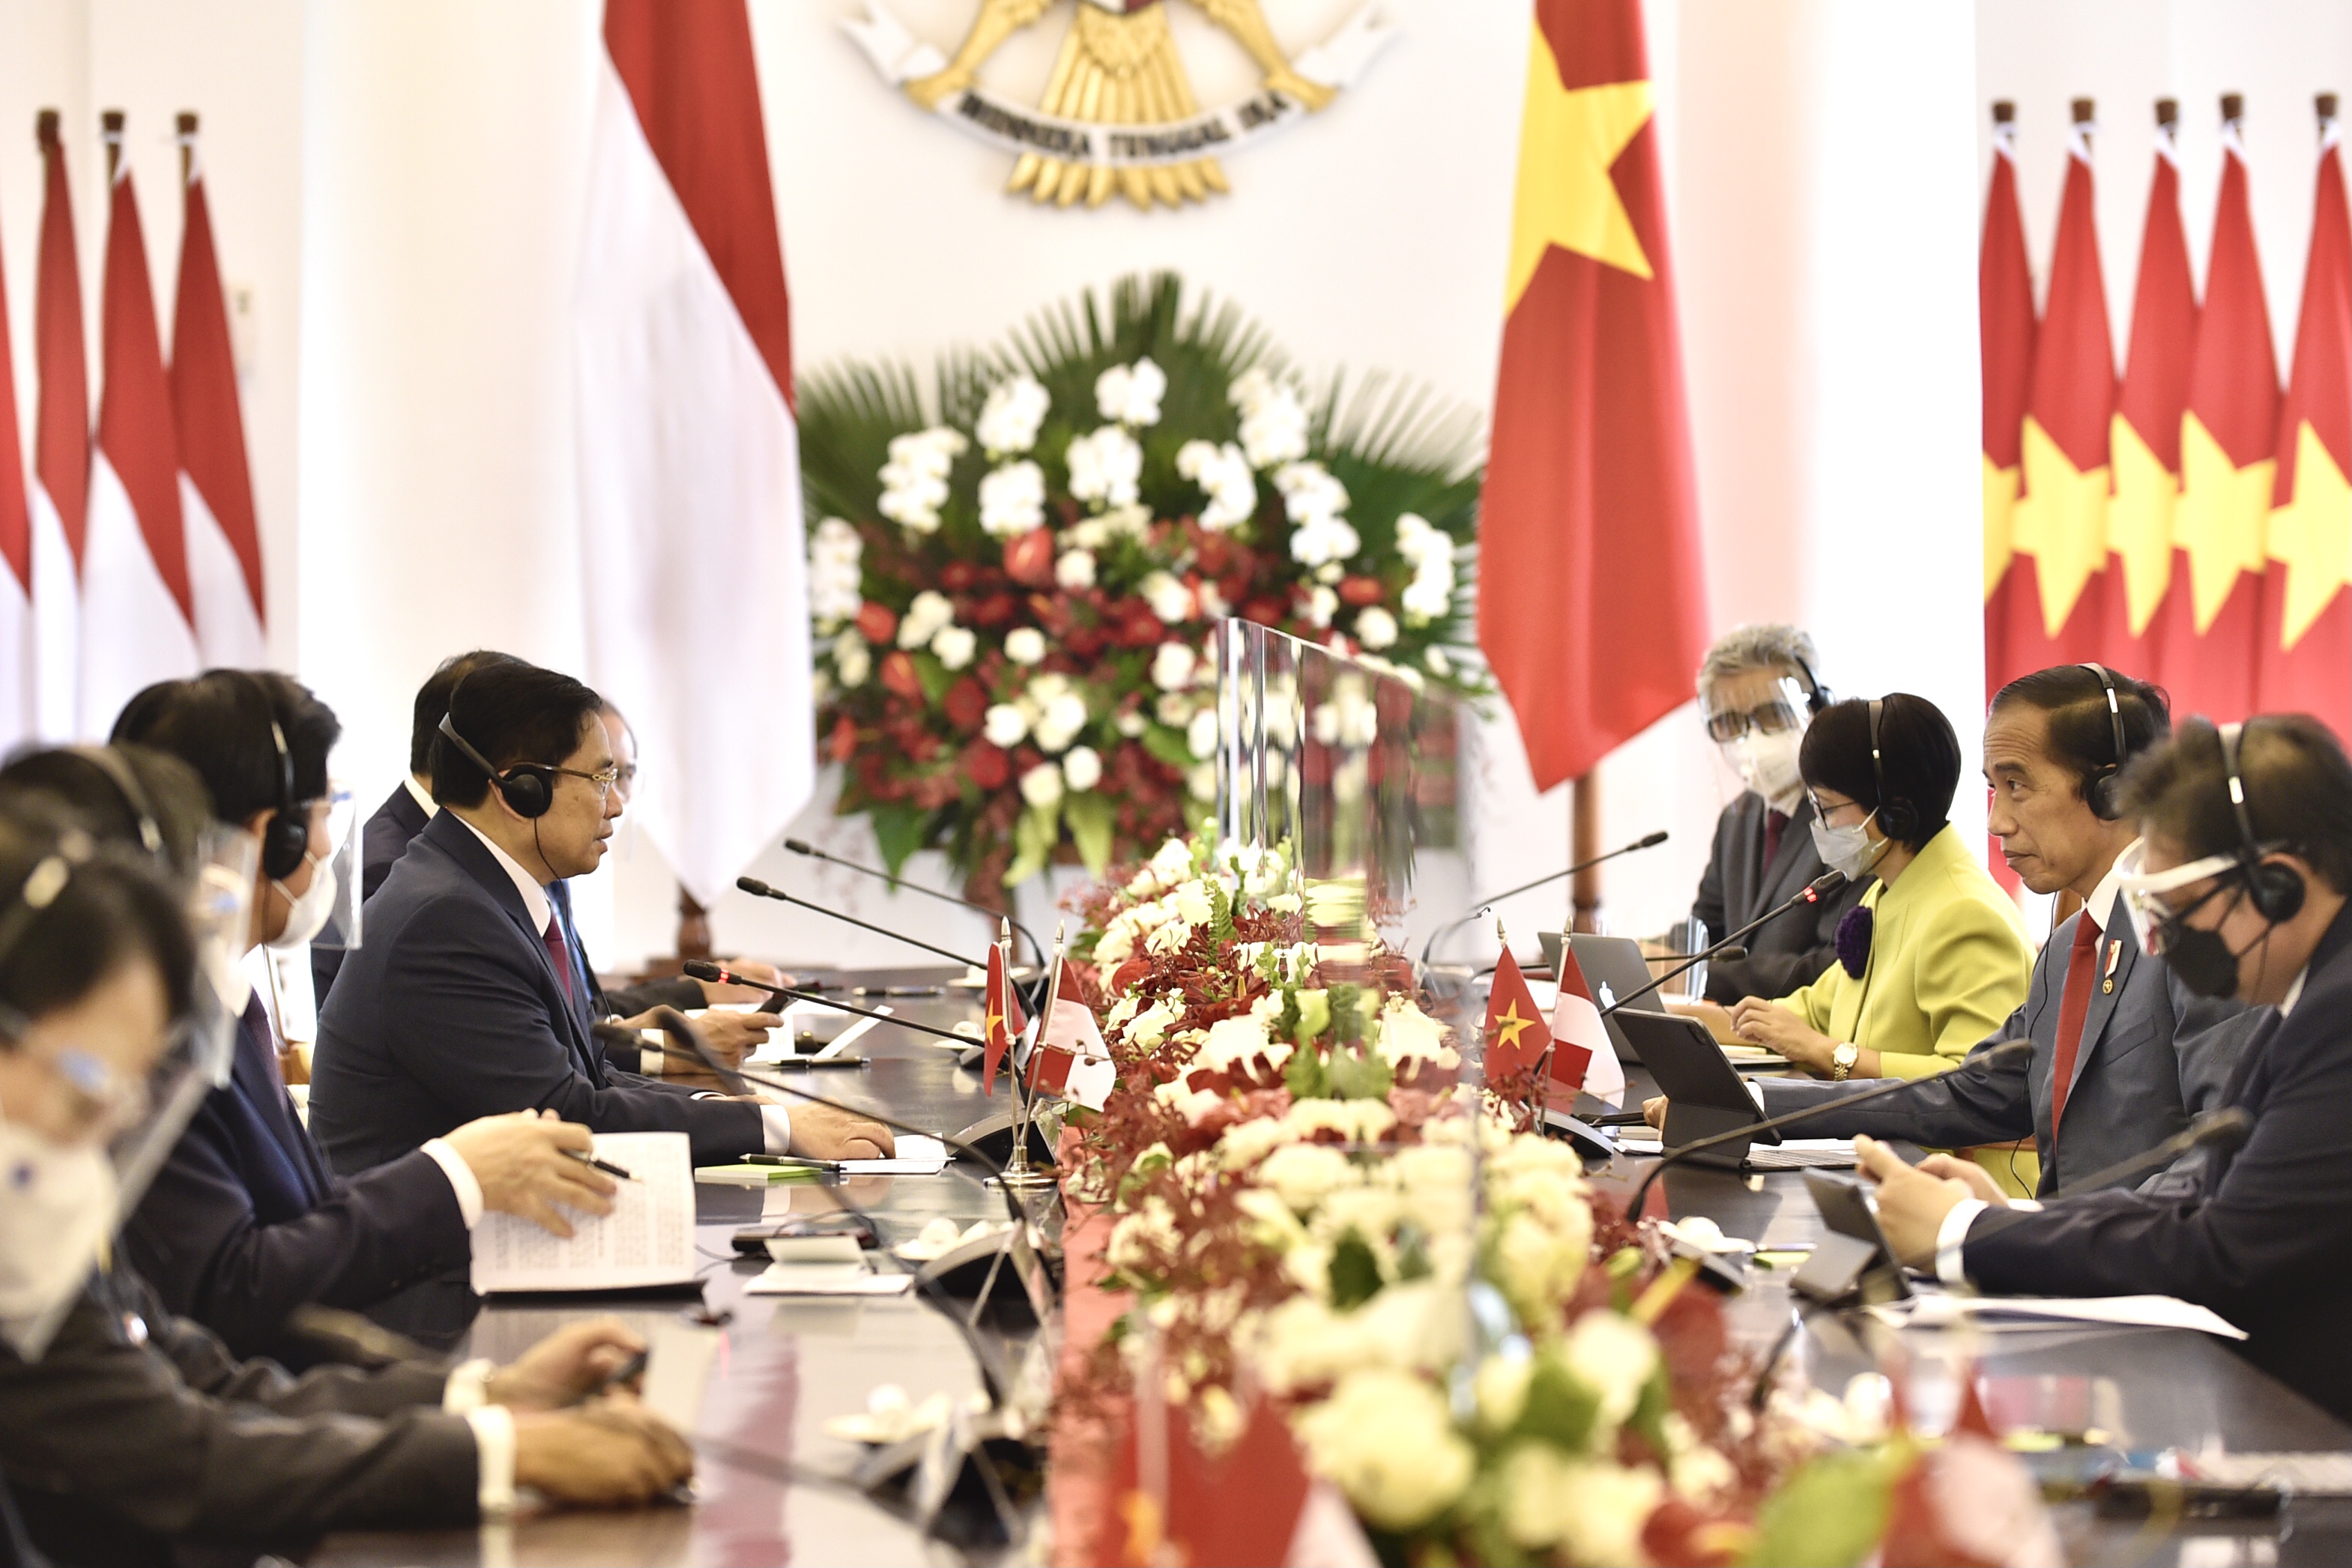 Hội đàm Thủ tướng Việt Nam và Tổng thống Indonesia: Hội đàm giữa Thủ tướng Việt Nam và Tổng thống Indonesia là một sự kiện quan trọng, góp phần thúc đẩy hợp tác giữa hai quốc gia trong nhiều lĩnh vực như kinh tế, văn hóa, giáo dục,...Điều này cũng thể hiện mối quan hệ tốt đẹp và sự đoàn kết giữa Việt Nam và Indonesia.